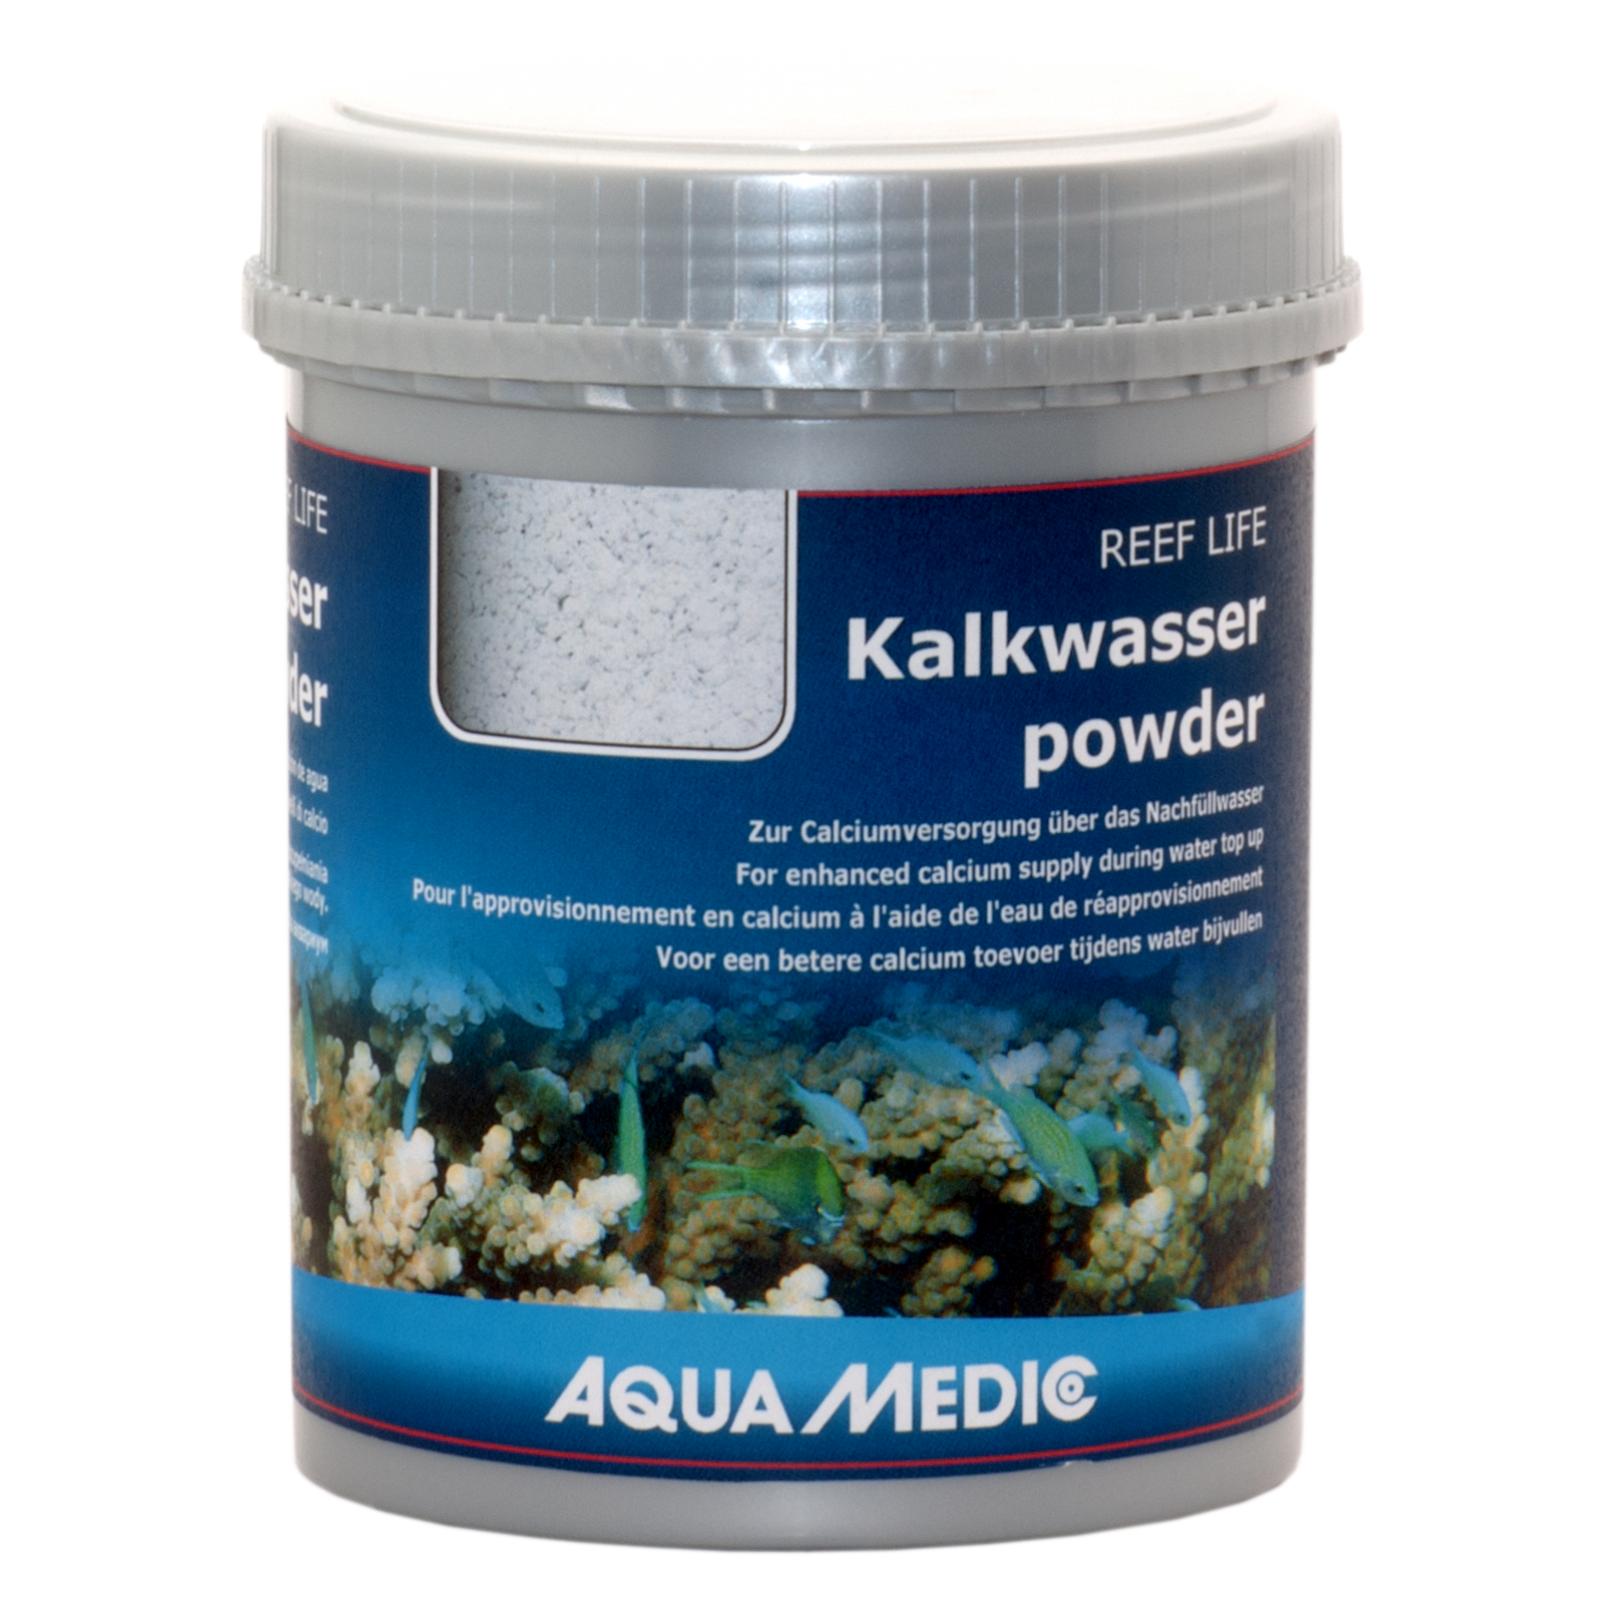 Гидроксид кальция Aqua Medic REEF LIFE Kalkwasserpowder